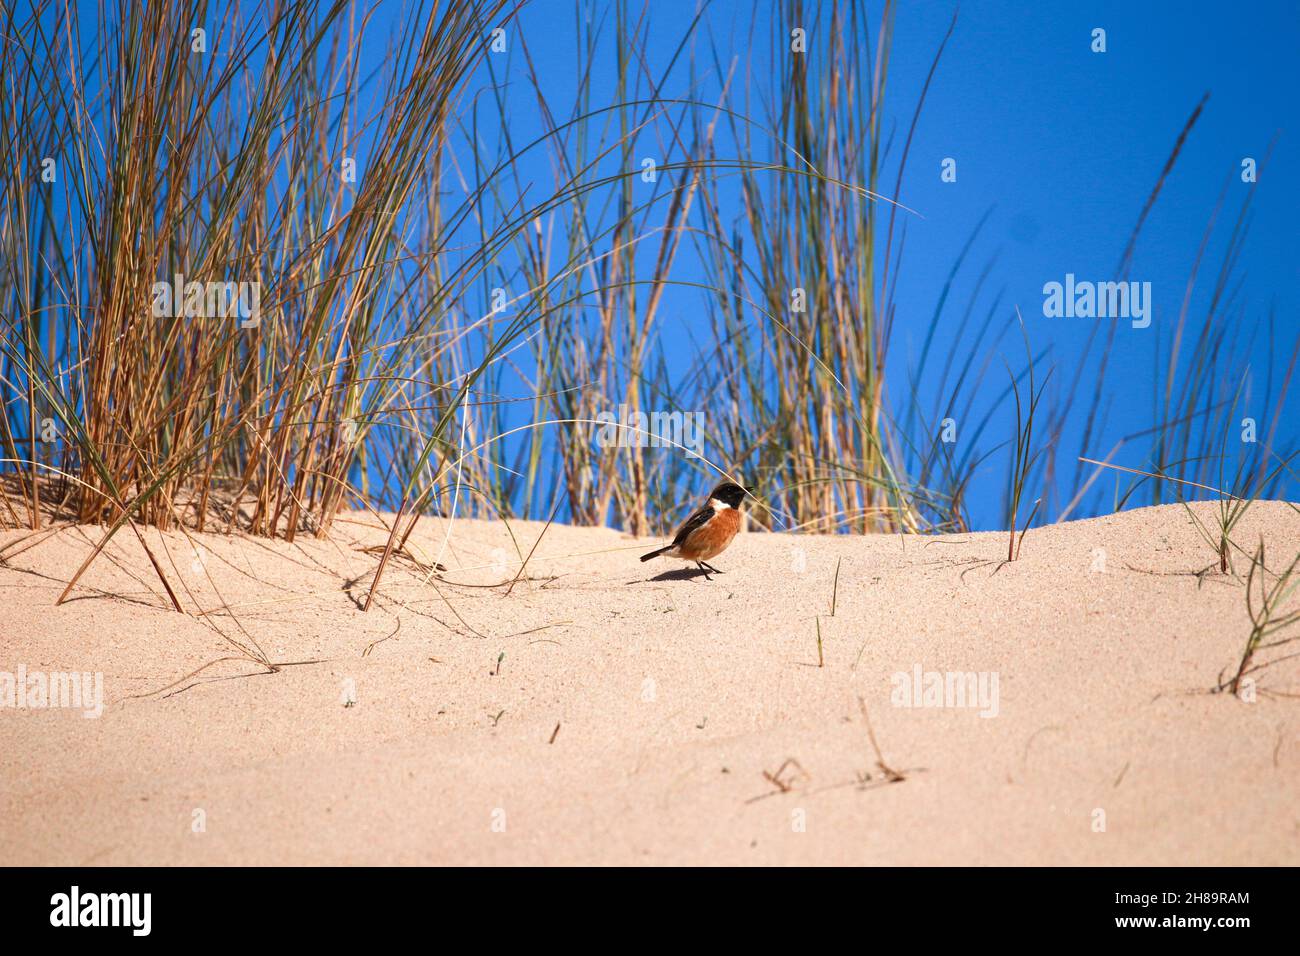 Stonechat européen sur une dune de sable.Scène sauvage de la nature Banque D'Images